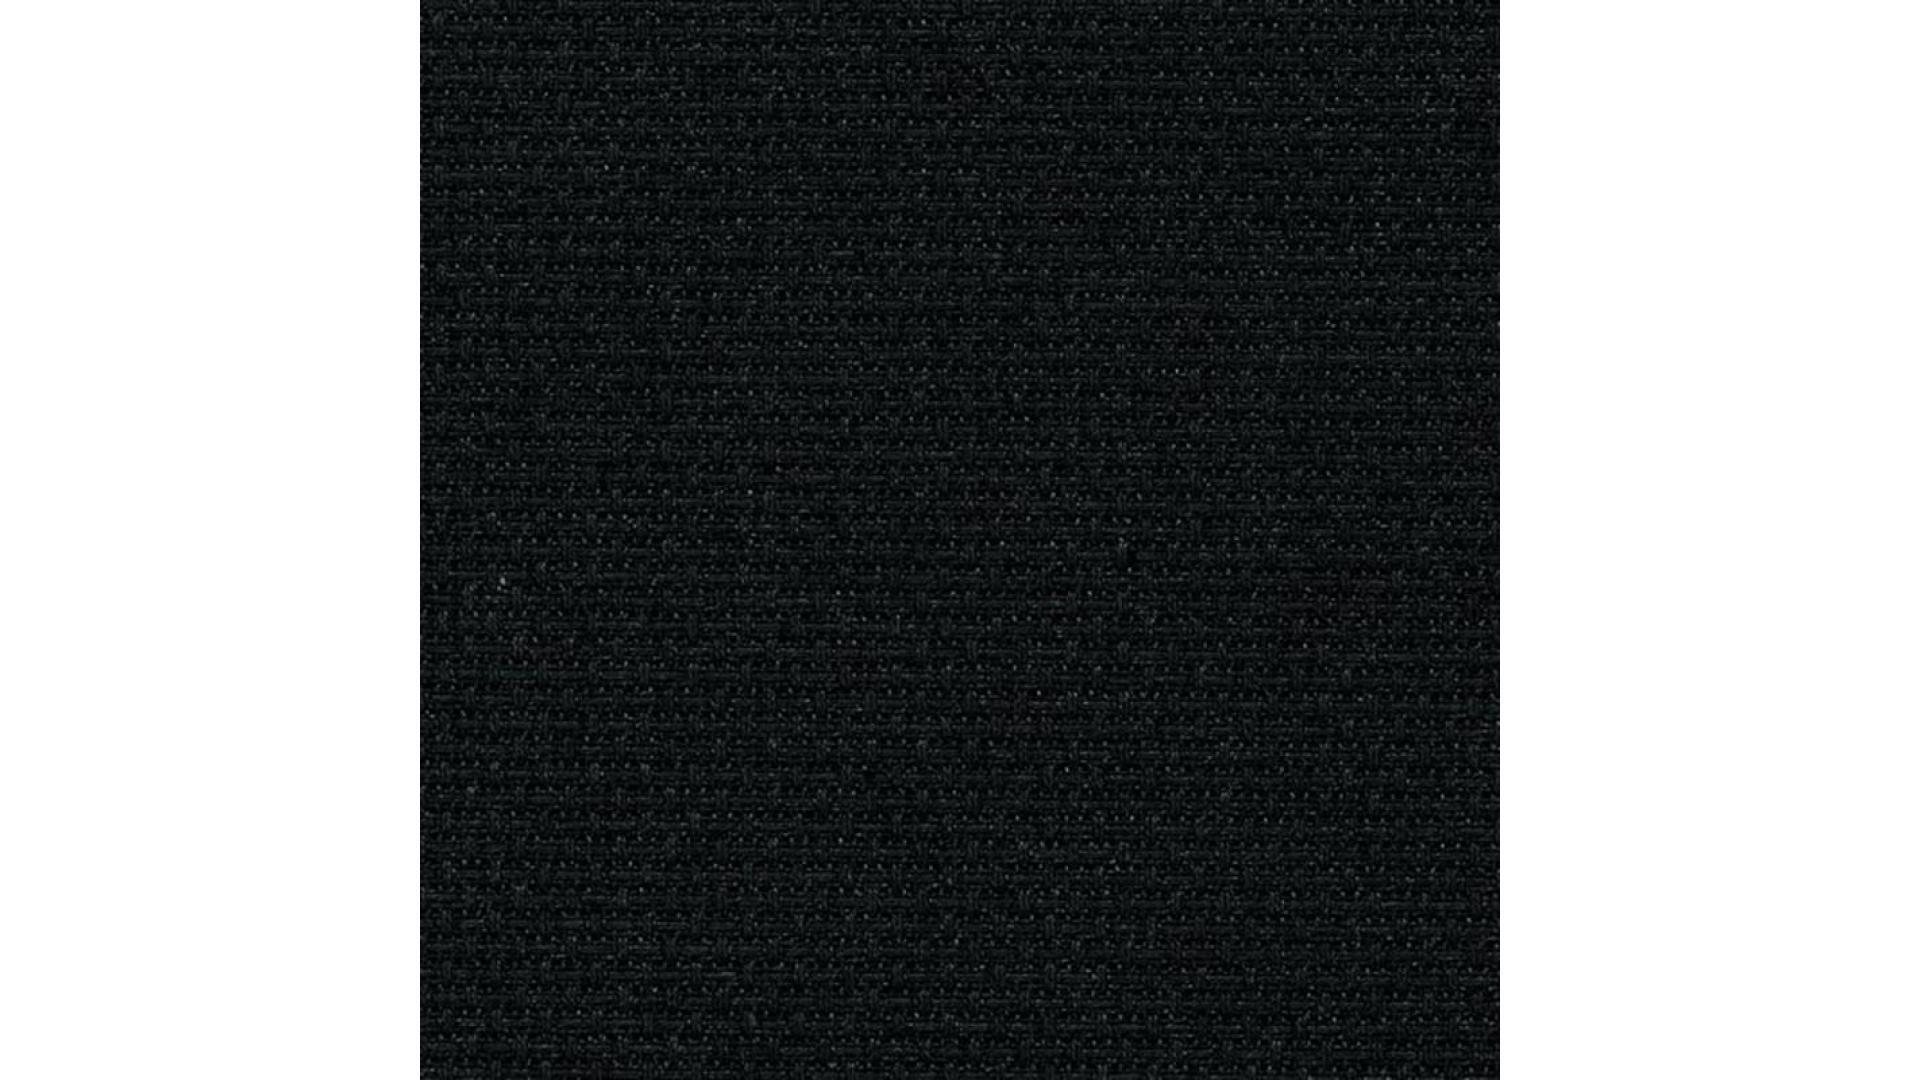 Stern Aida Cloth 14 Count BLACK, 110cm Wide, 3706.720 ($52.00 per metre)